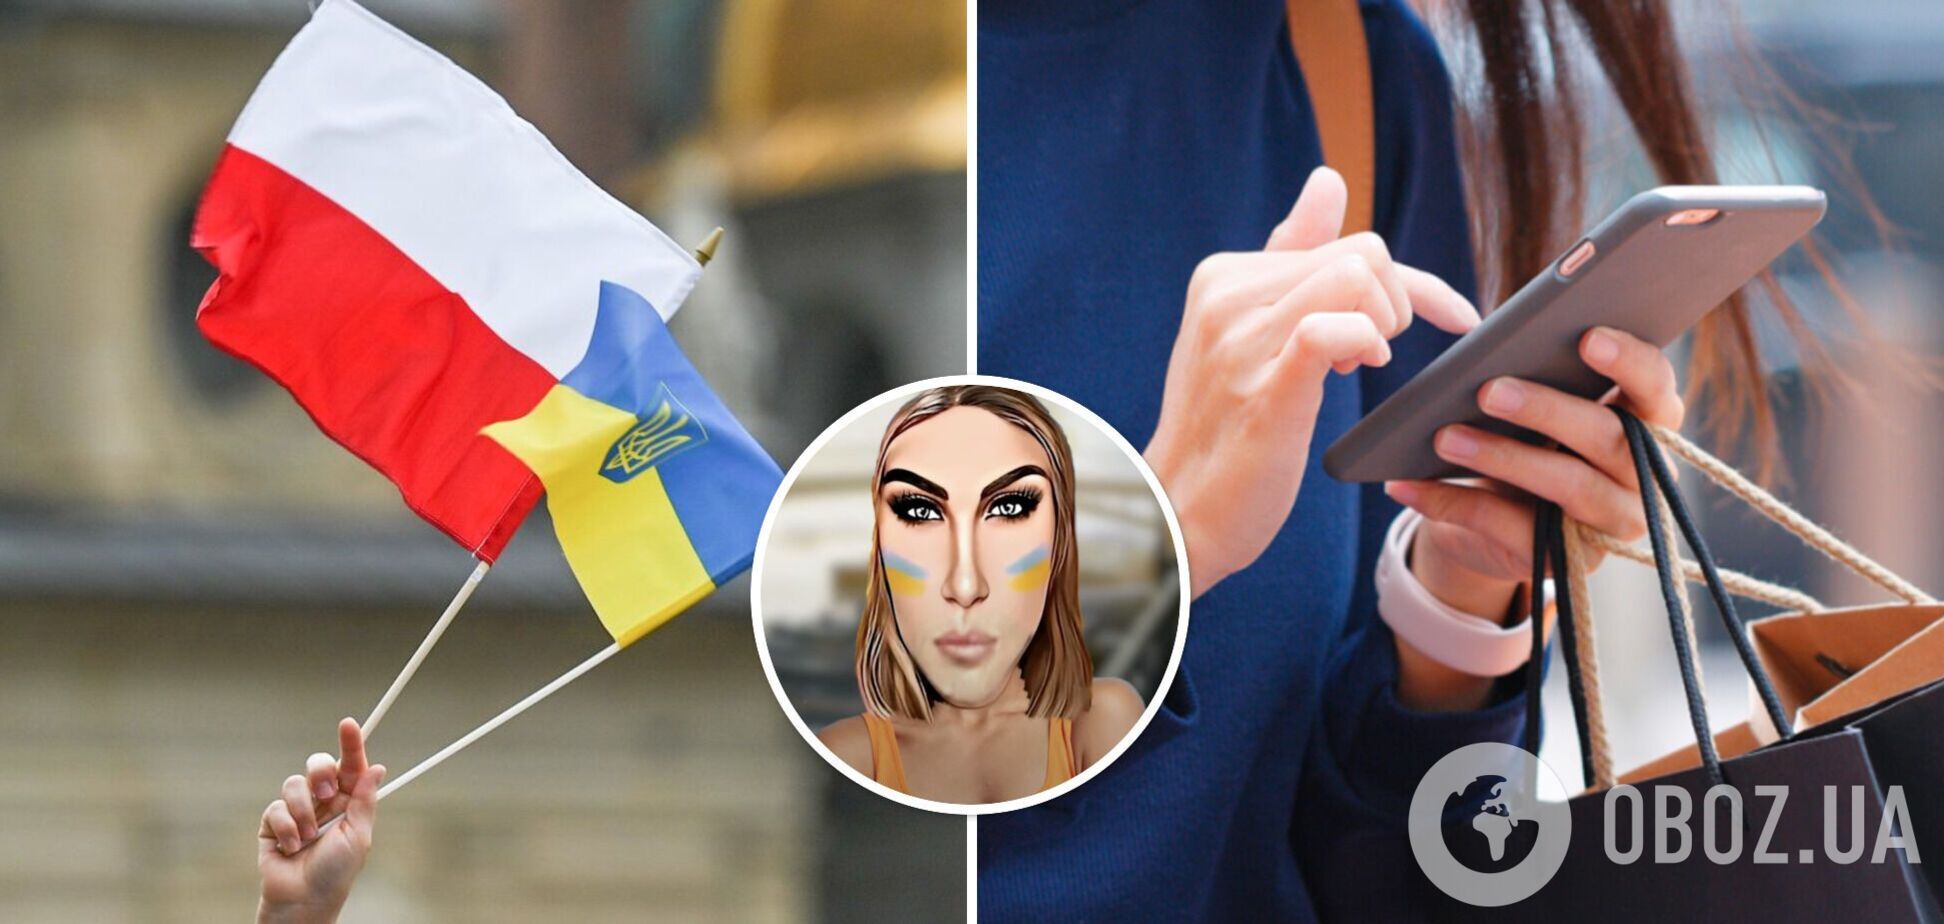 'Чому не в окопі?' Хто така 'Оля UA', яка розводить 'зраду', і як образ українки в Польщі став мемом